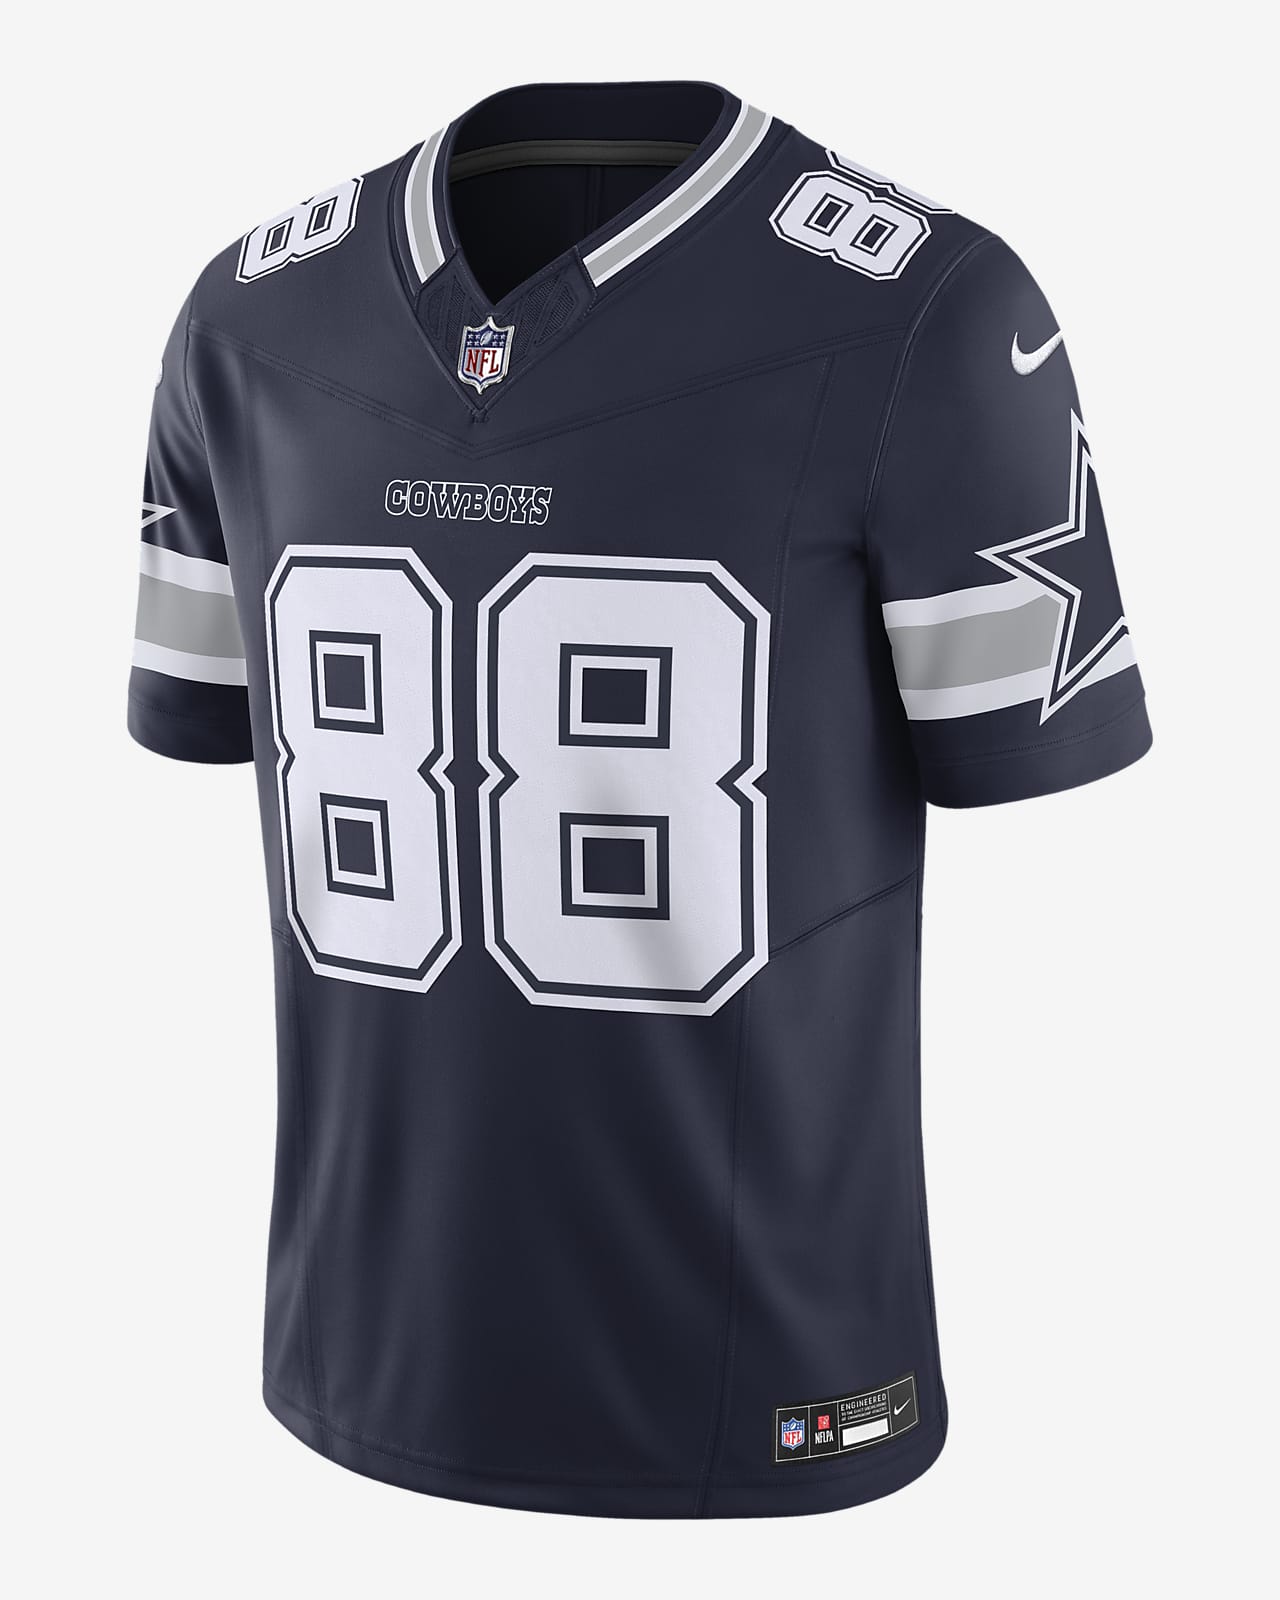 Jersey Nike Dri-FIT de la NFL Limited para hombre CeeDee Lamb Dallas Cowboys